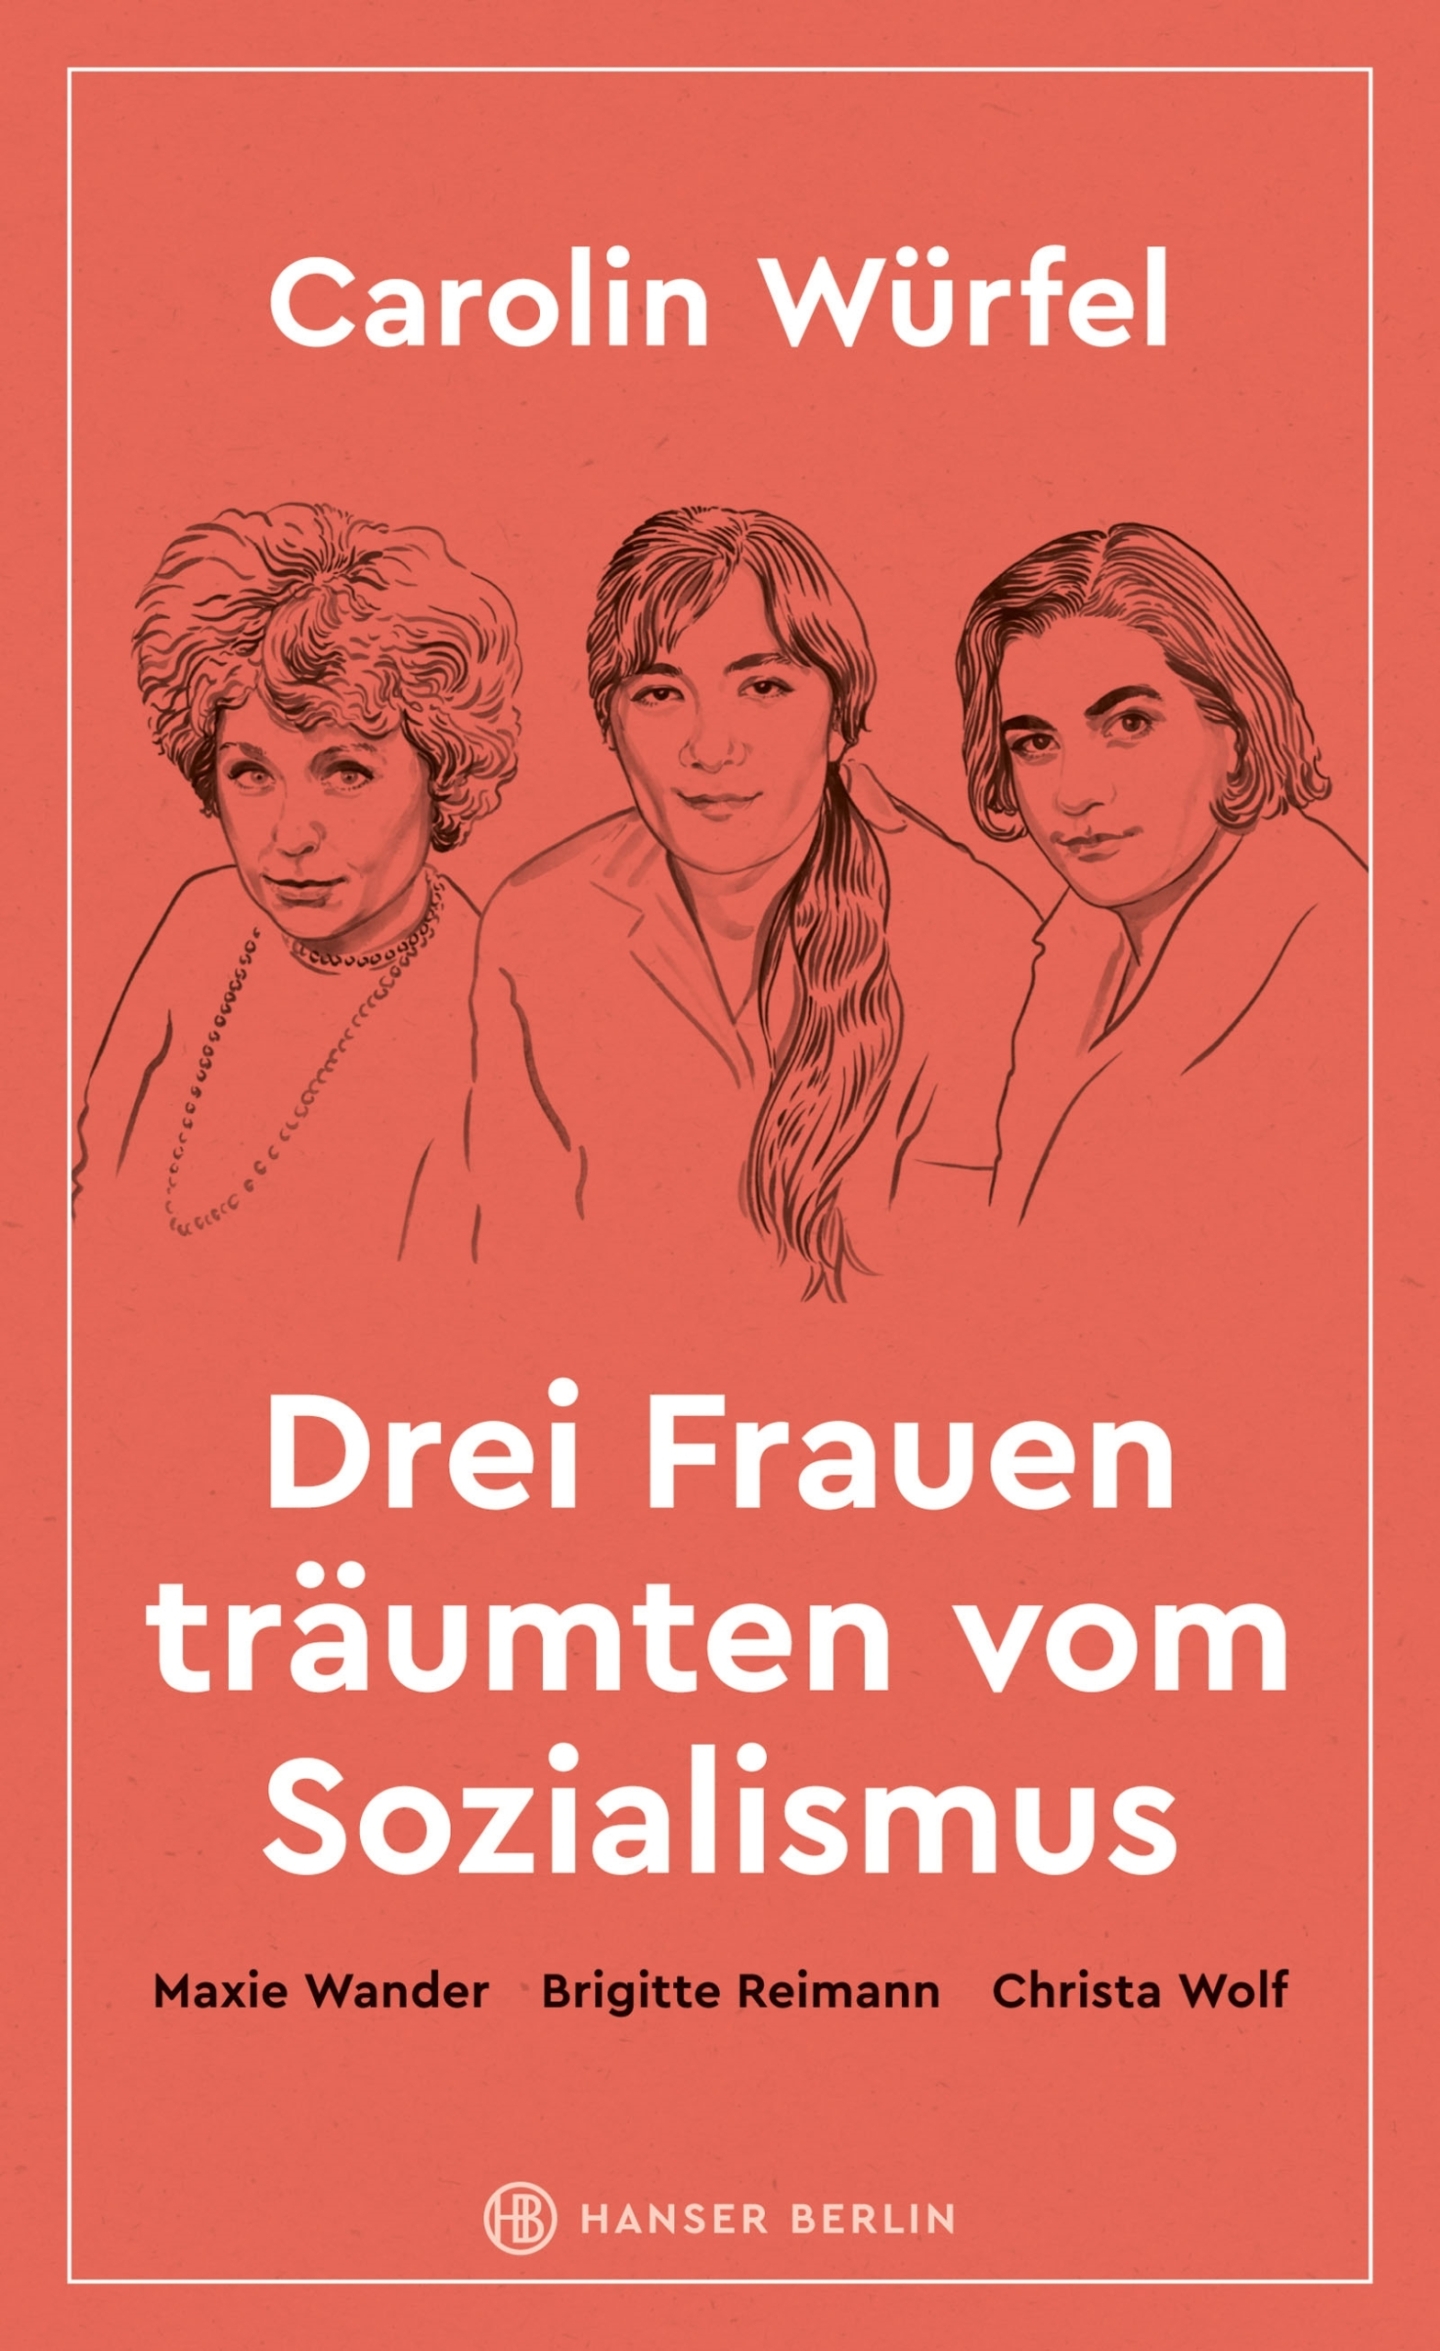 Book Cover Illustration for Hanser Verlag